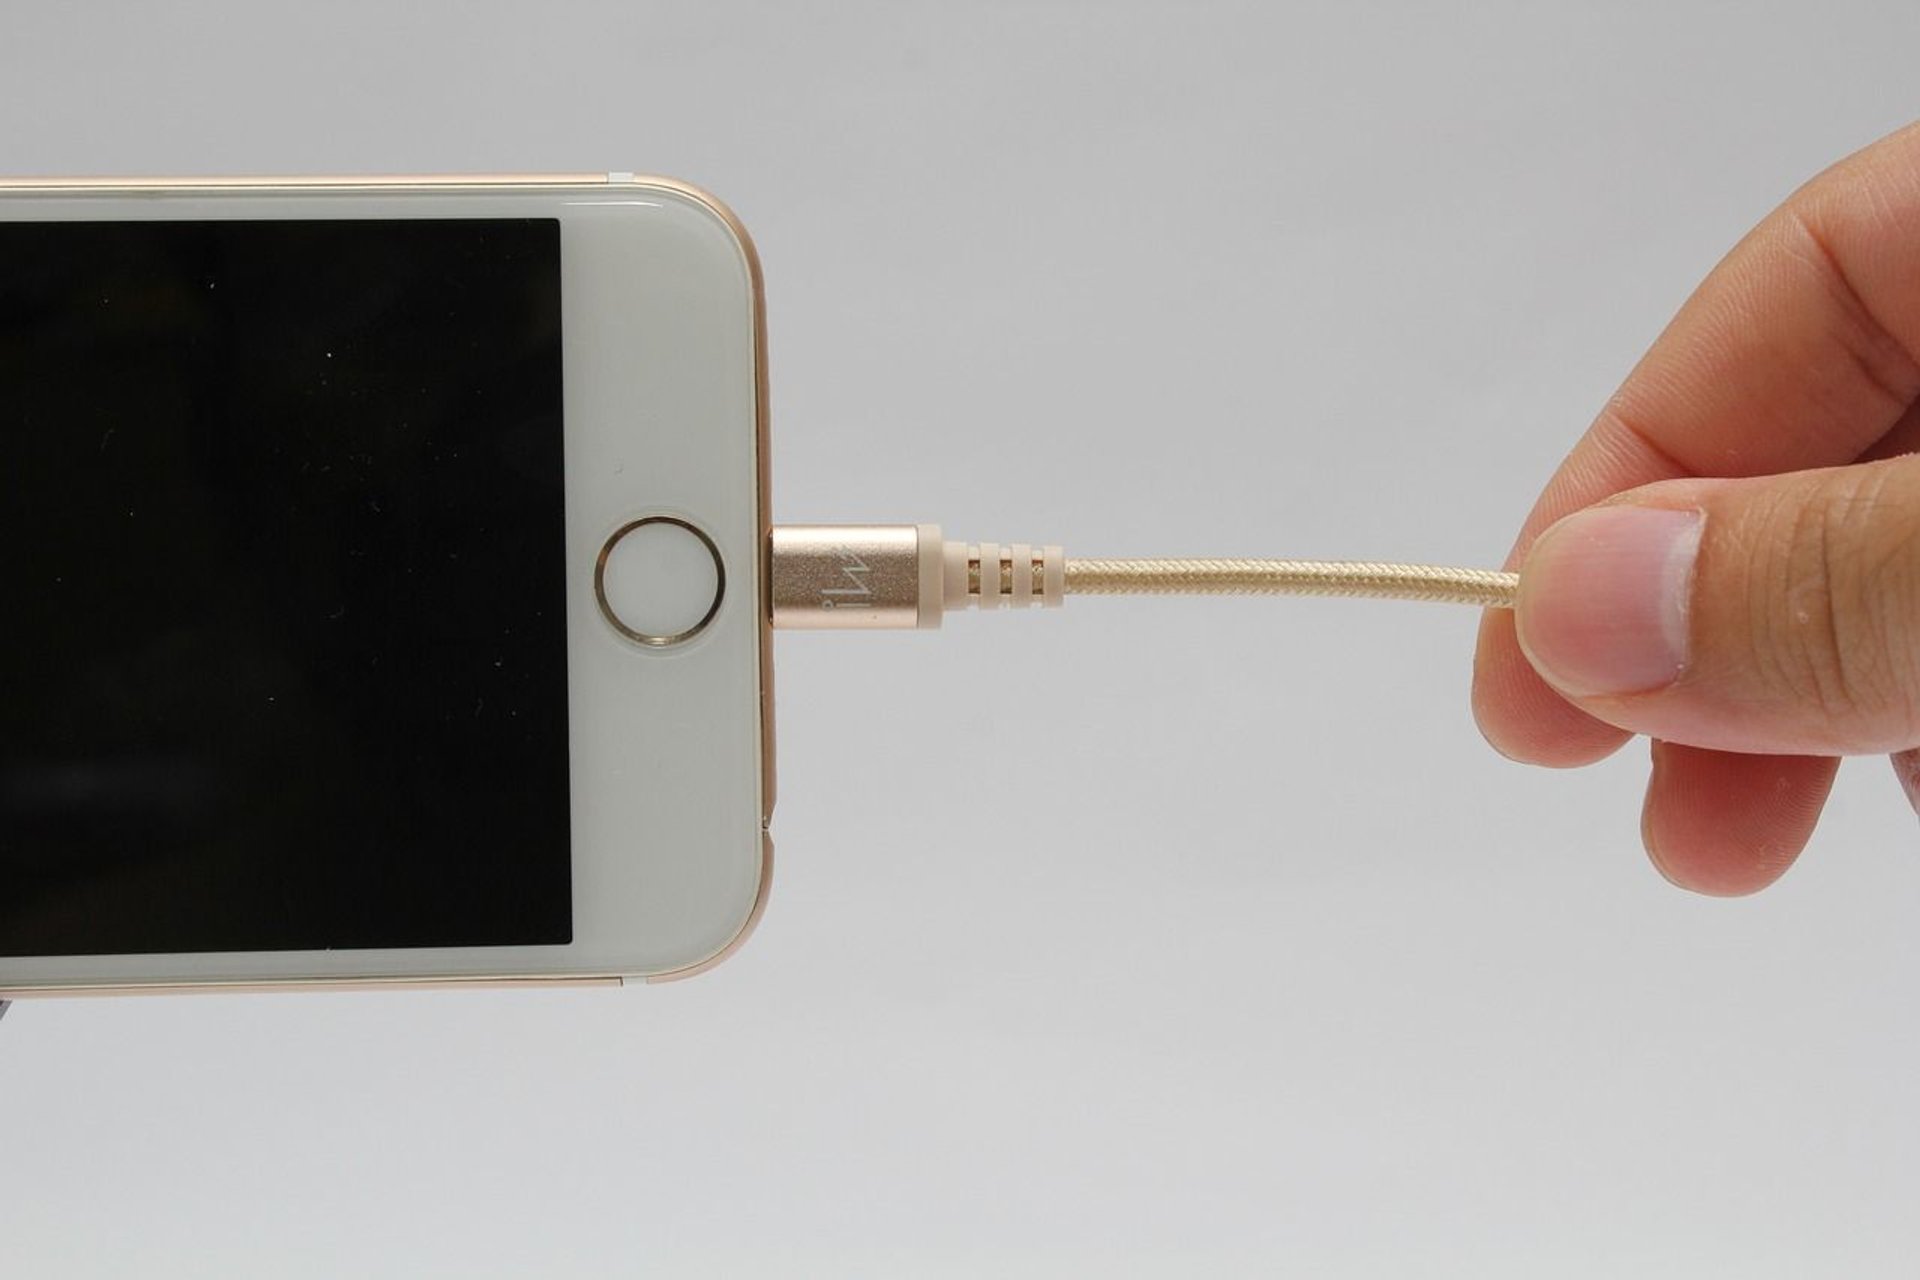 iPhone podłączony do kabla ładującego.